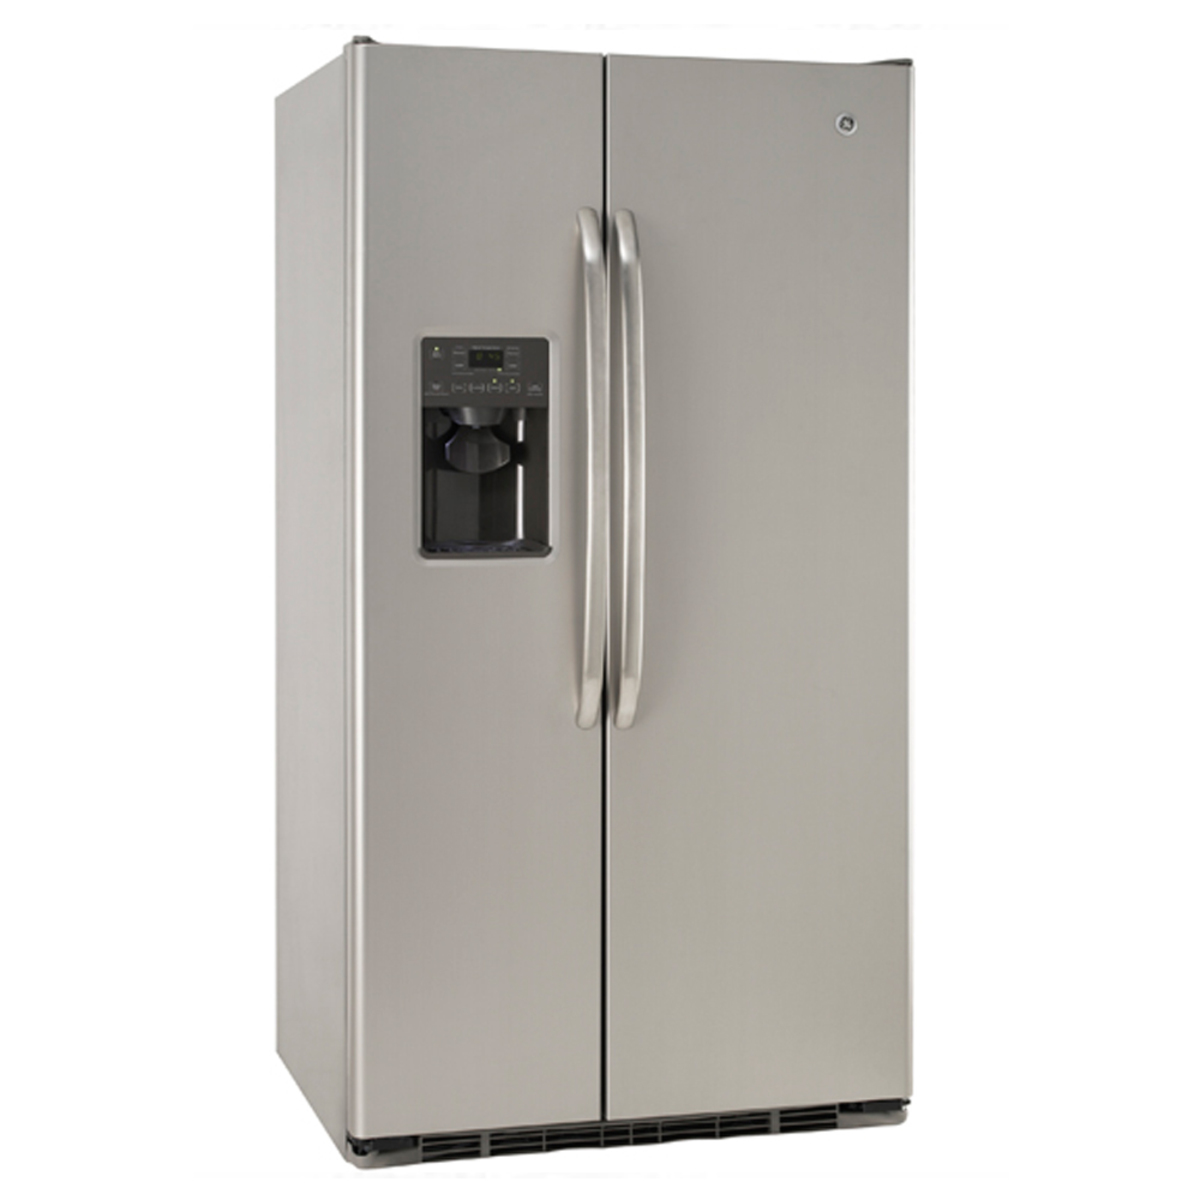 Refrigerador automático 718.62 L Inoxidable GE - GSMS6FGDFSS, Refrigeradores, Refrigeración